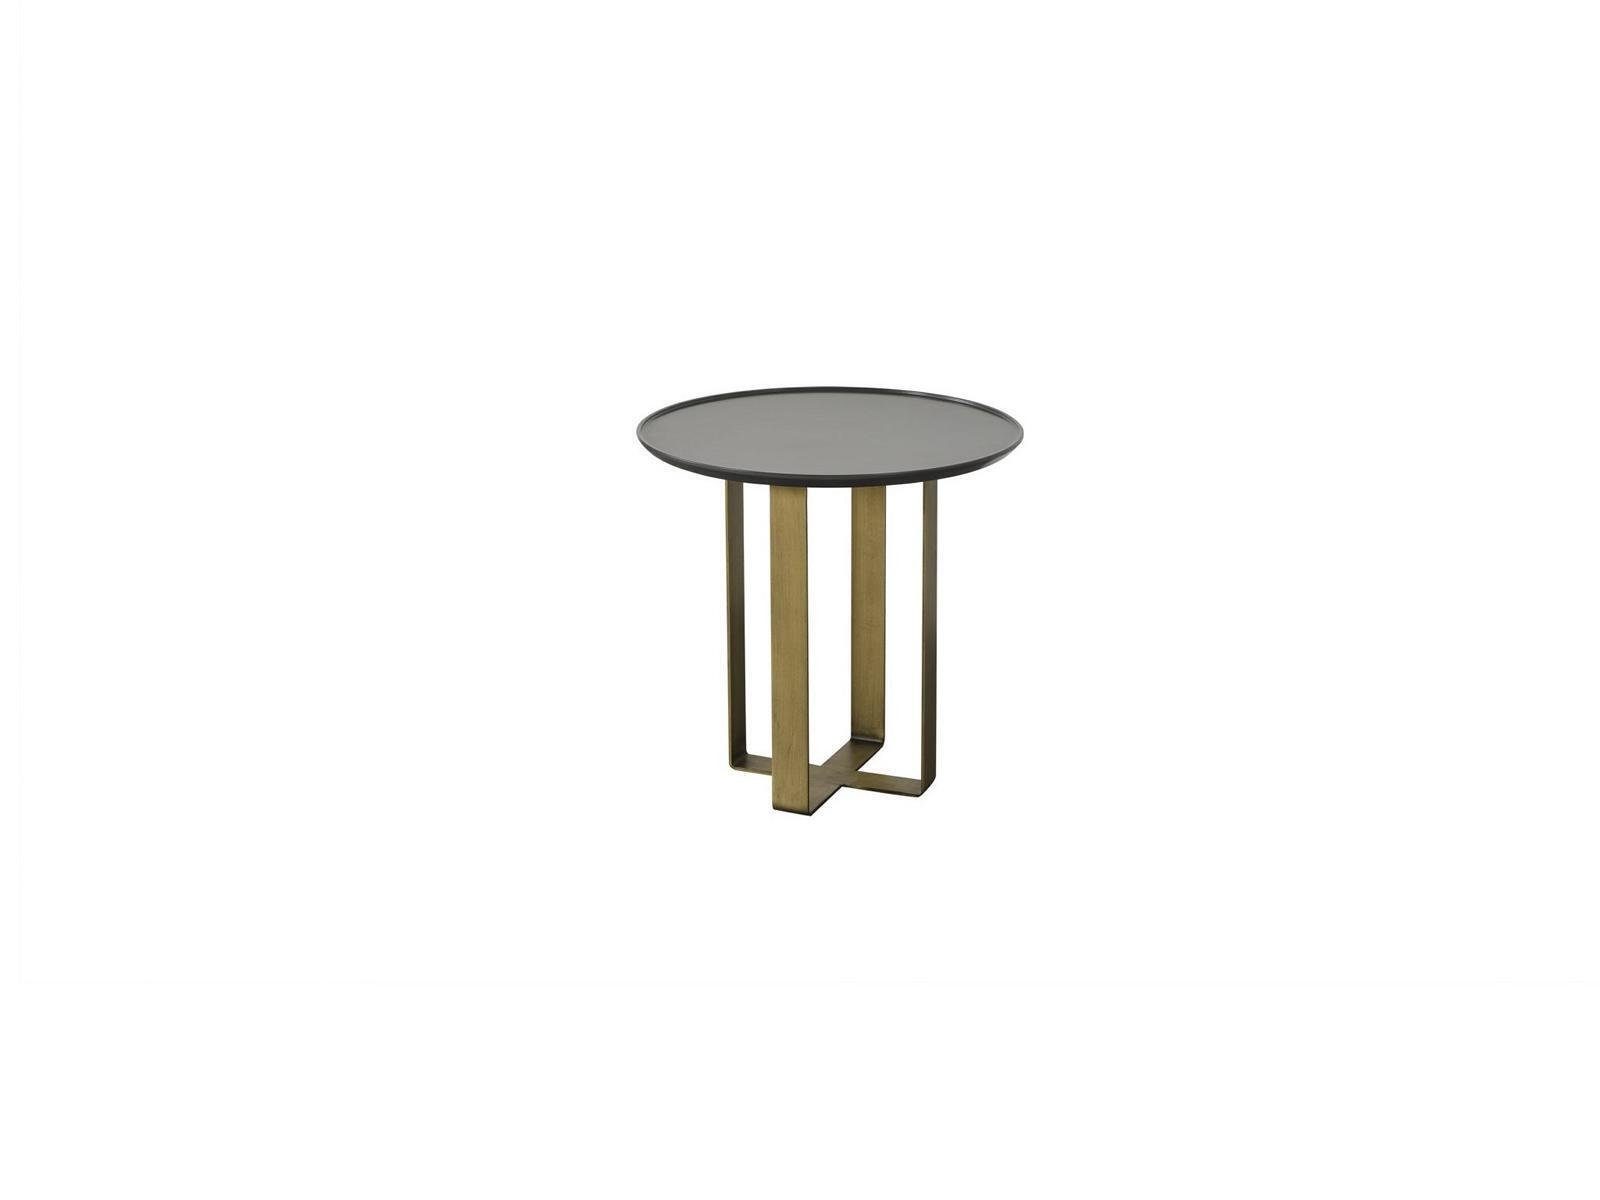 (Beistelltisch), Wohnzimmer Beistelltisch Gold JVmoebel Europe Edelstahl In Made Couchtisch Beistelltisch Tisch Möbel